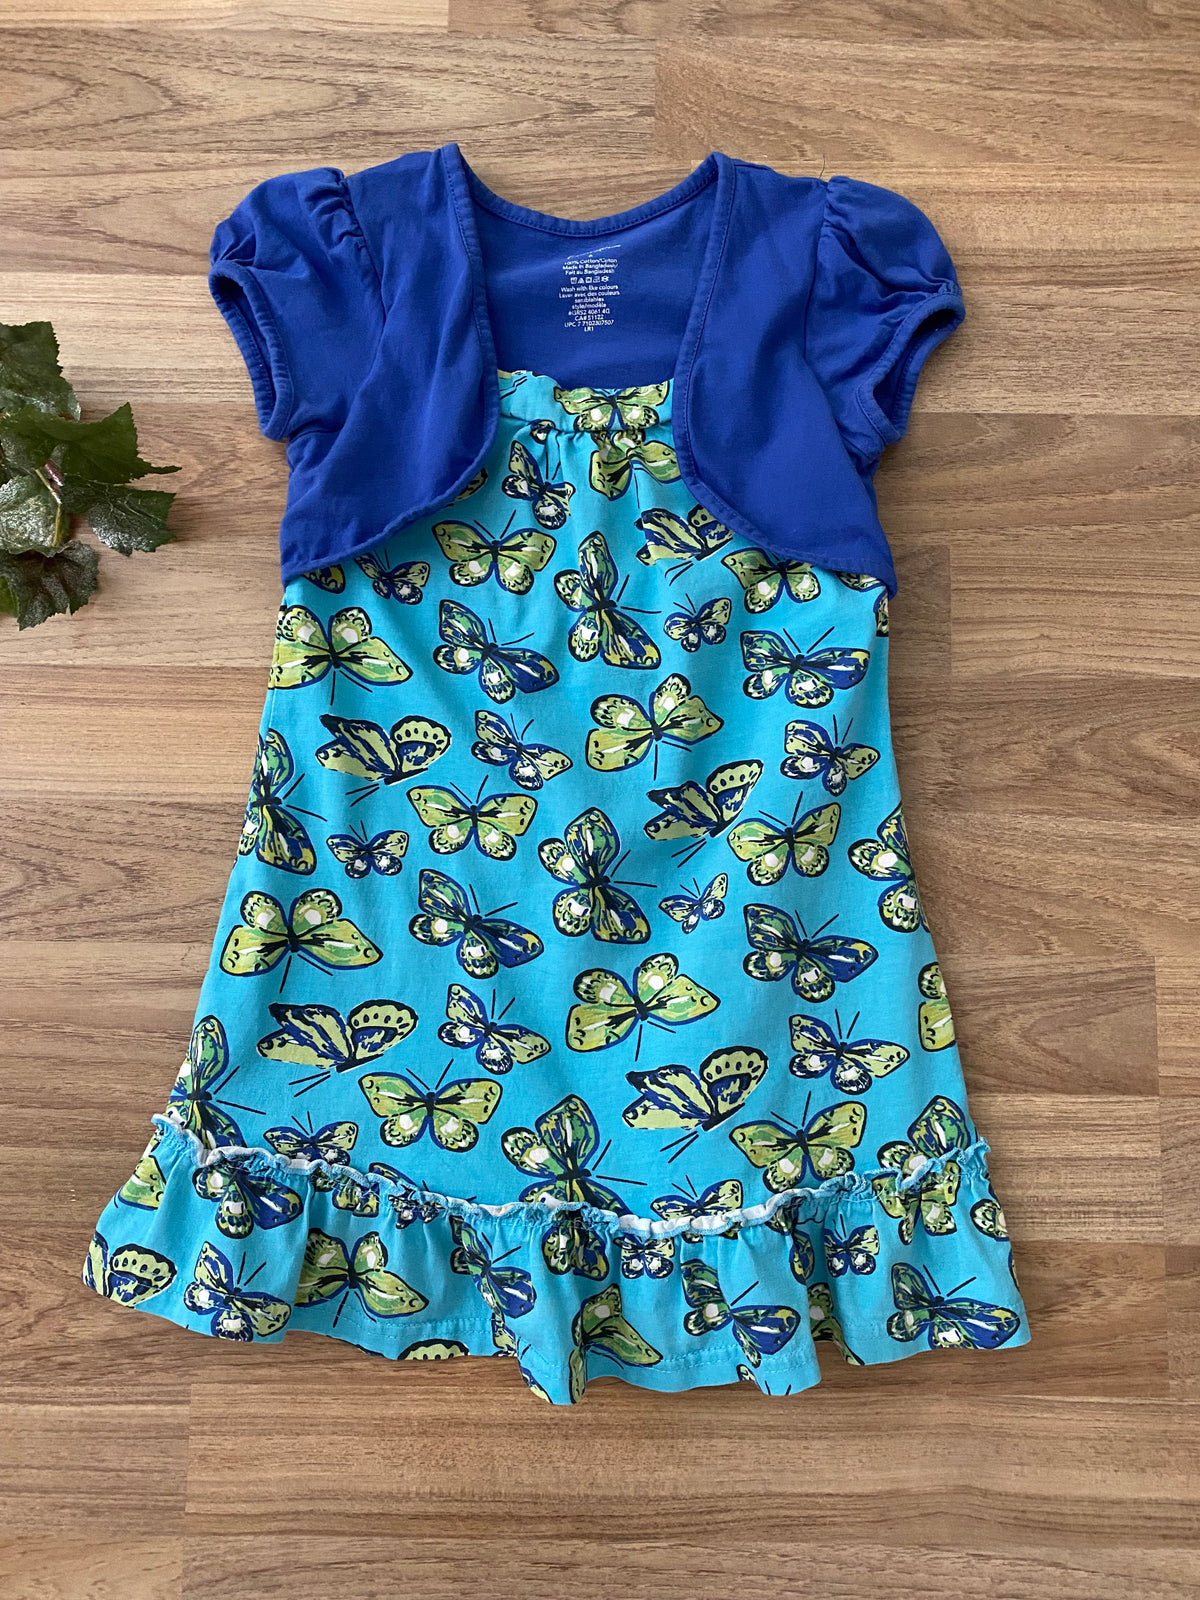 Summer Dress (Girls Size 6)